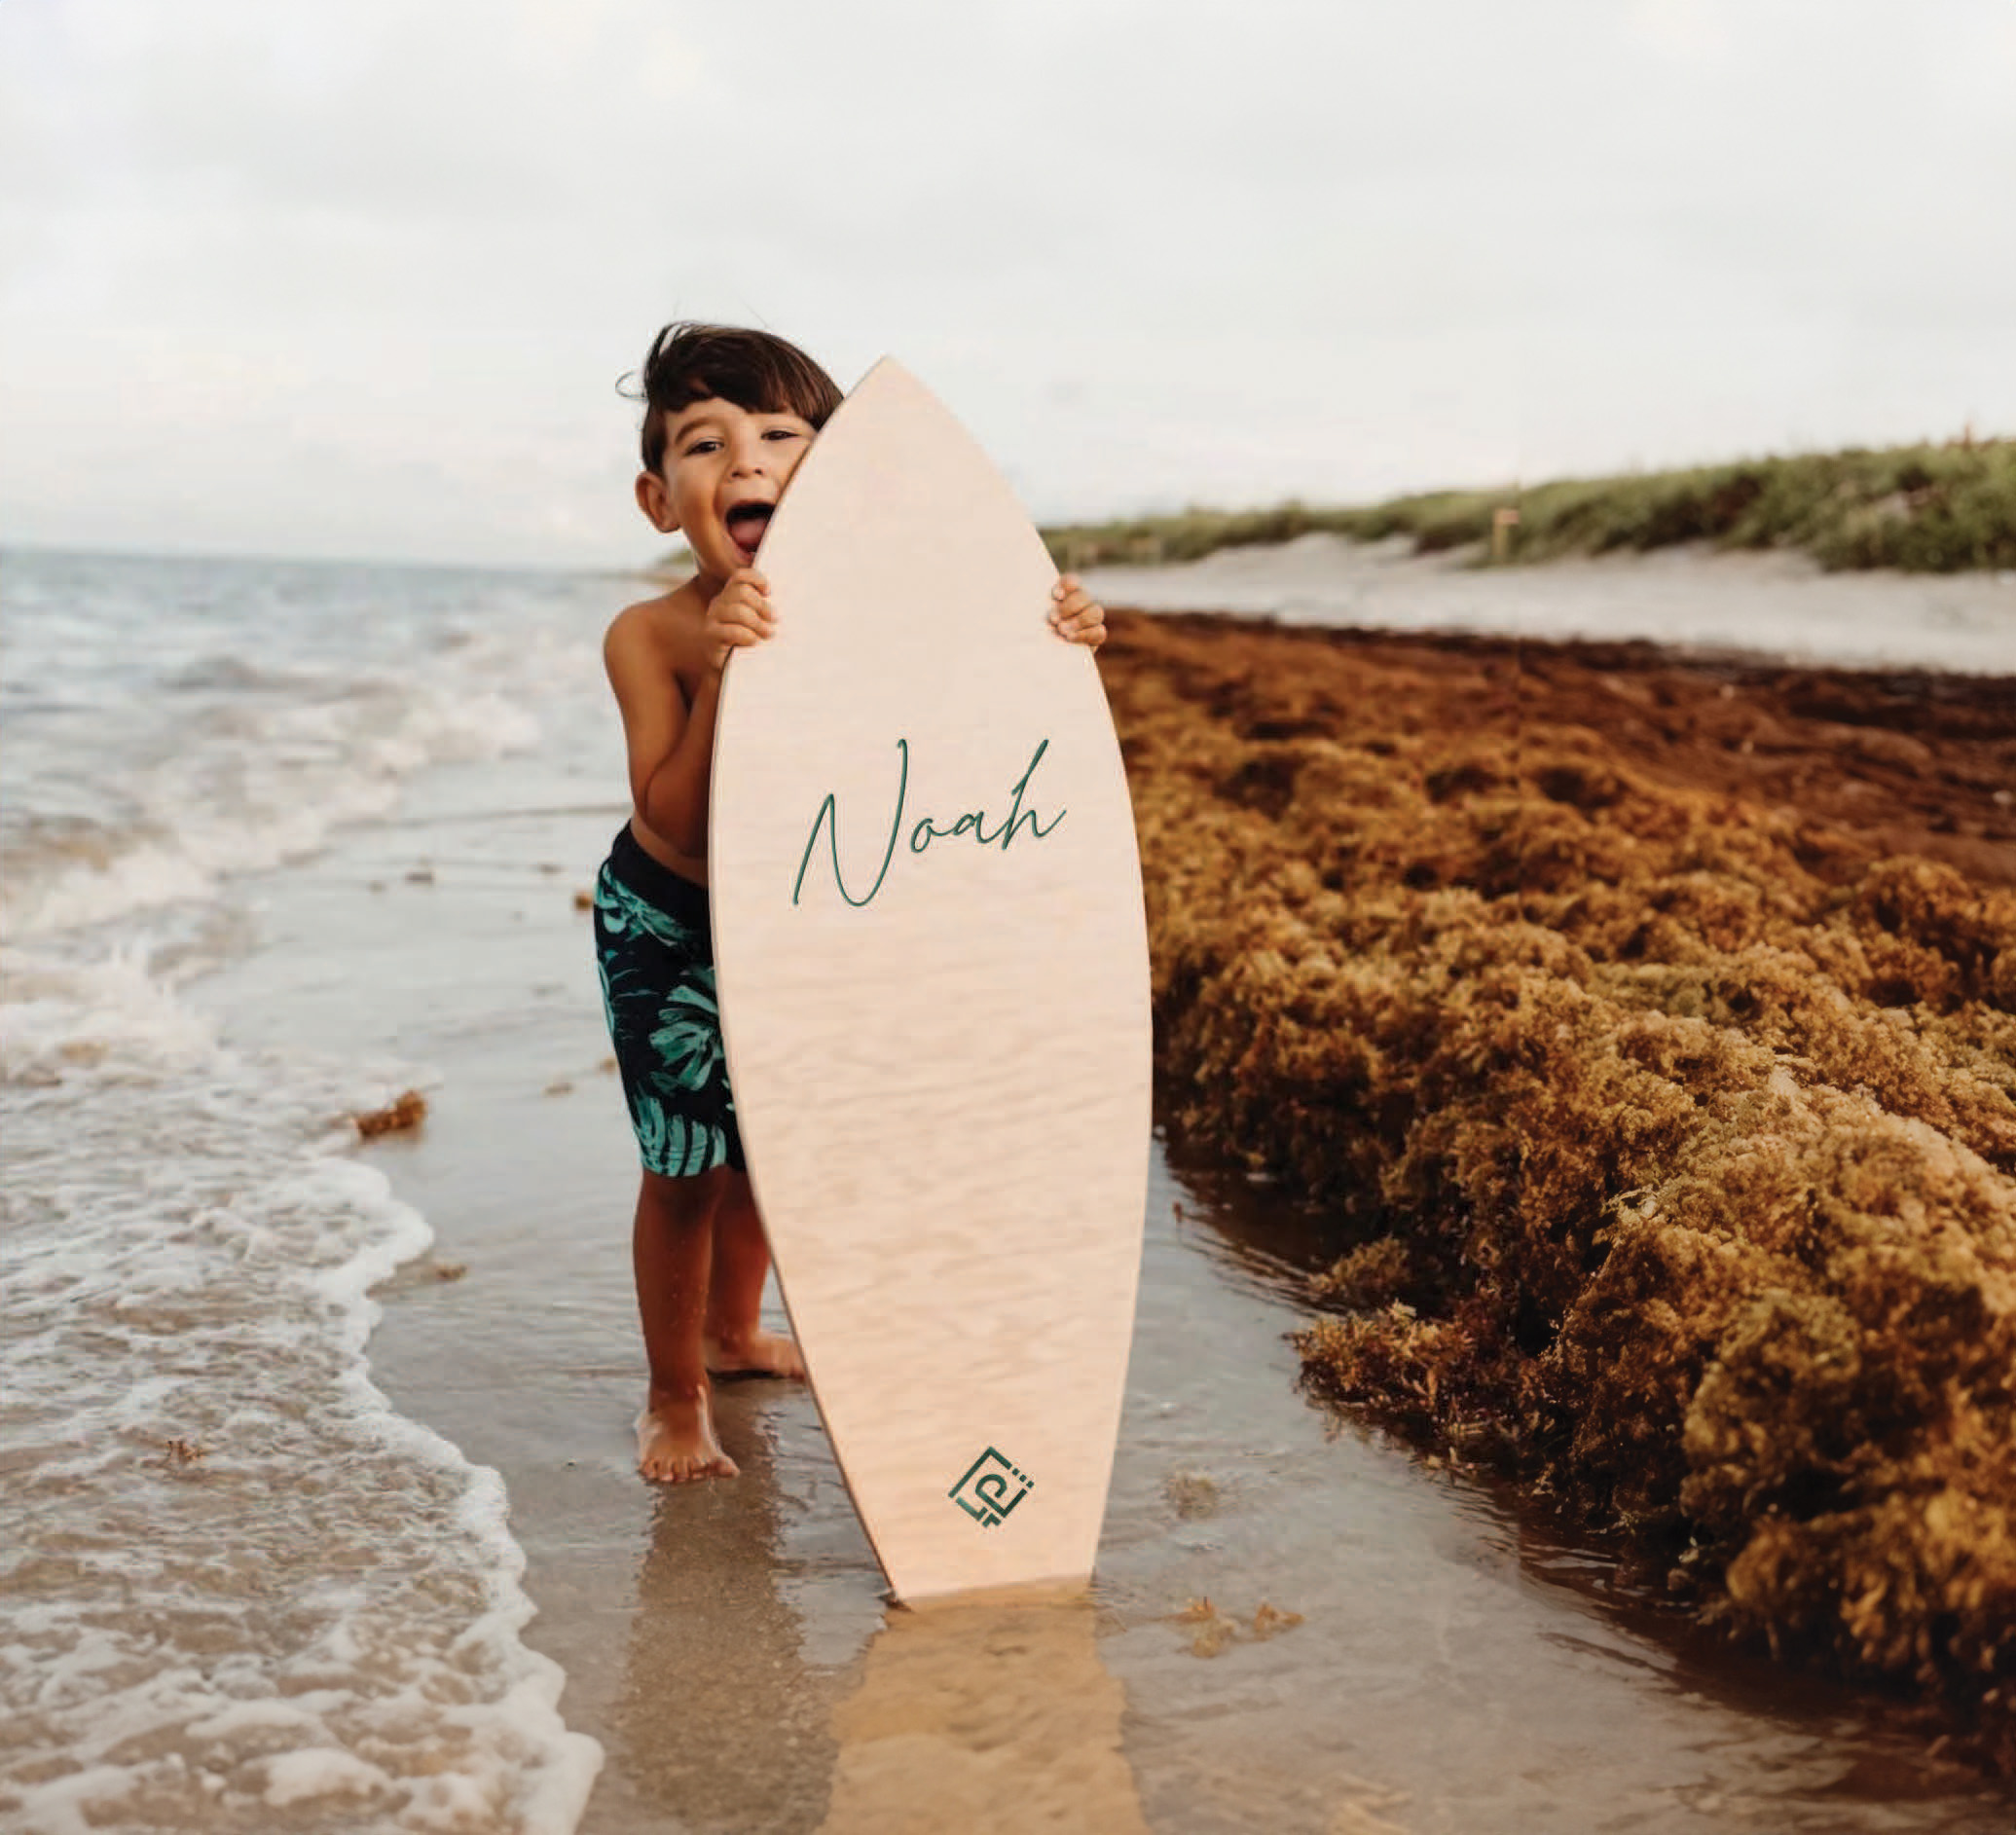 A boy on the beach with a surfboard.